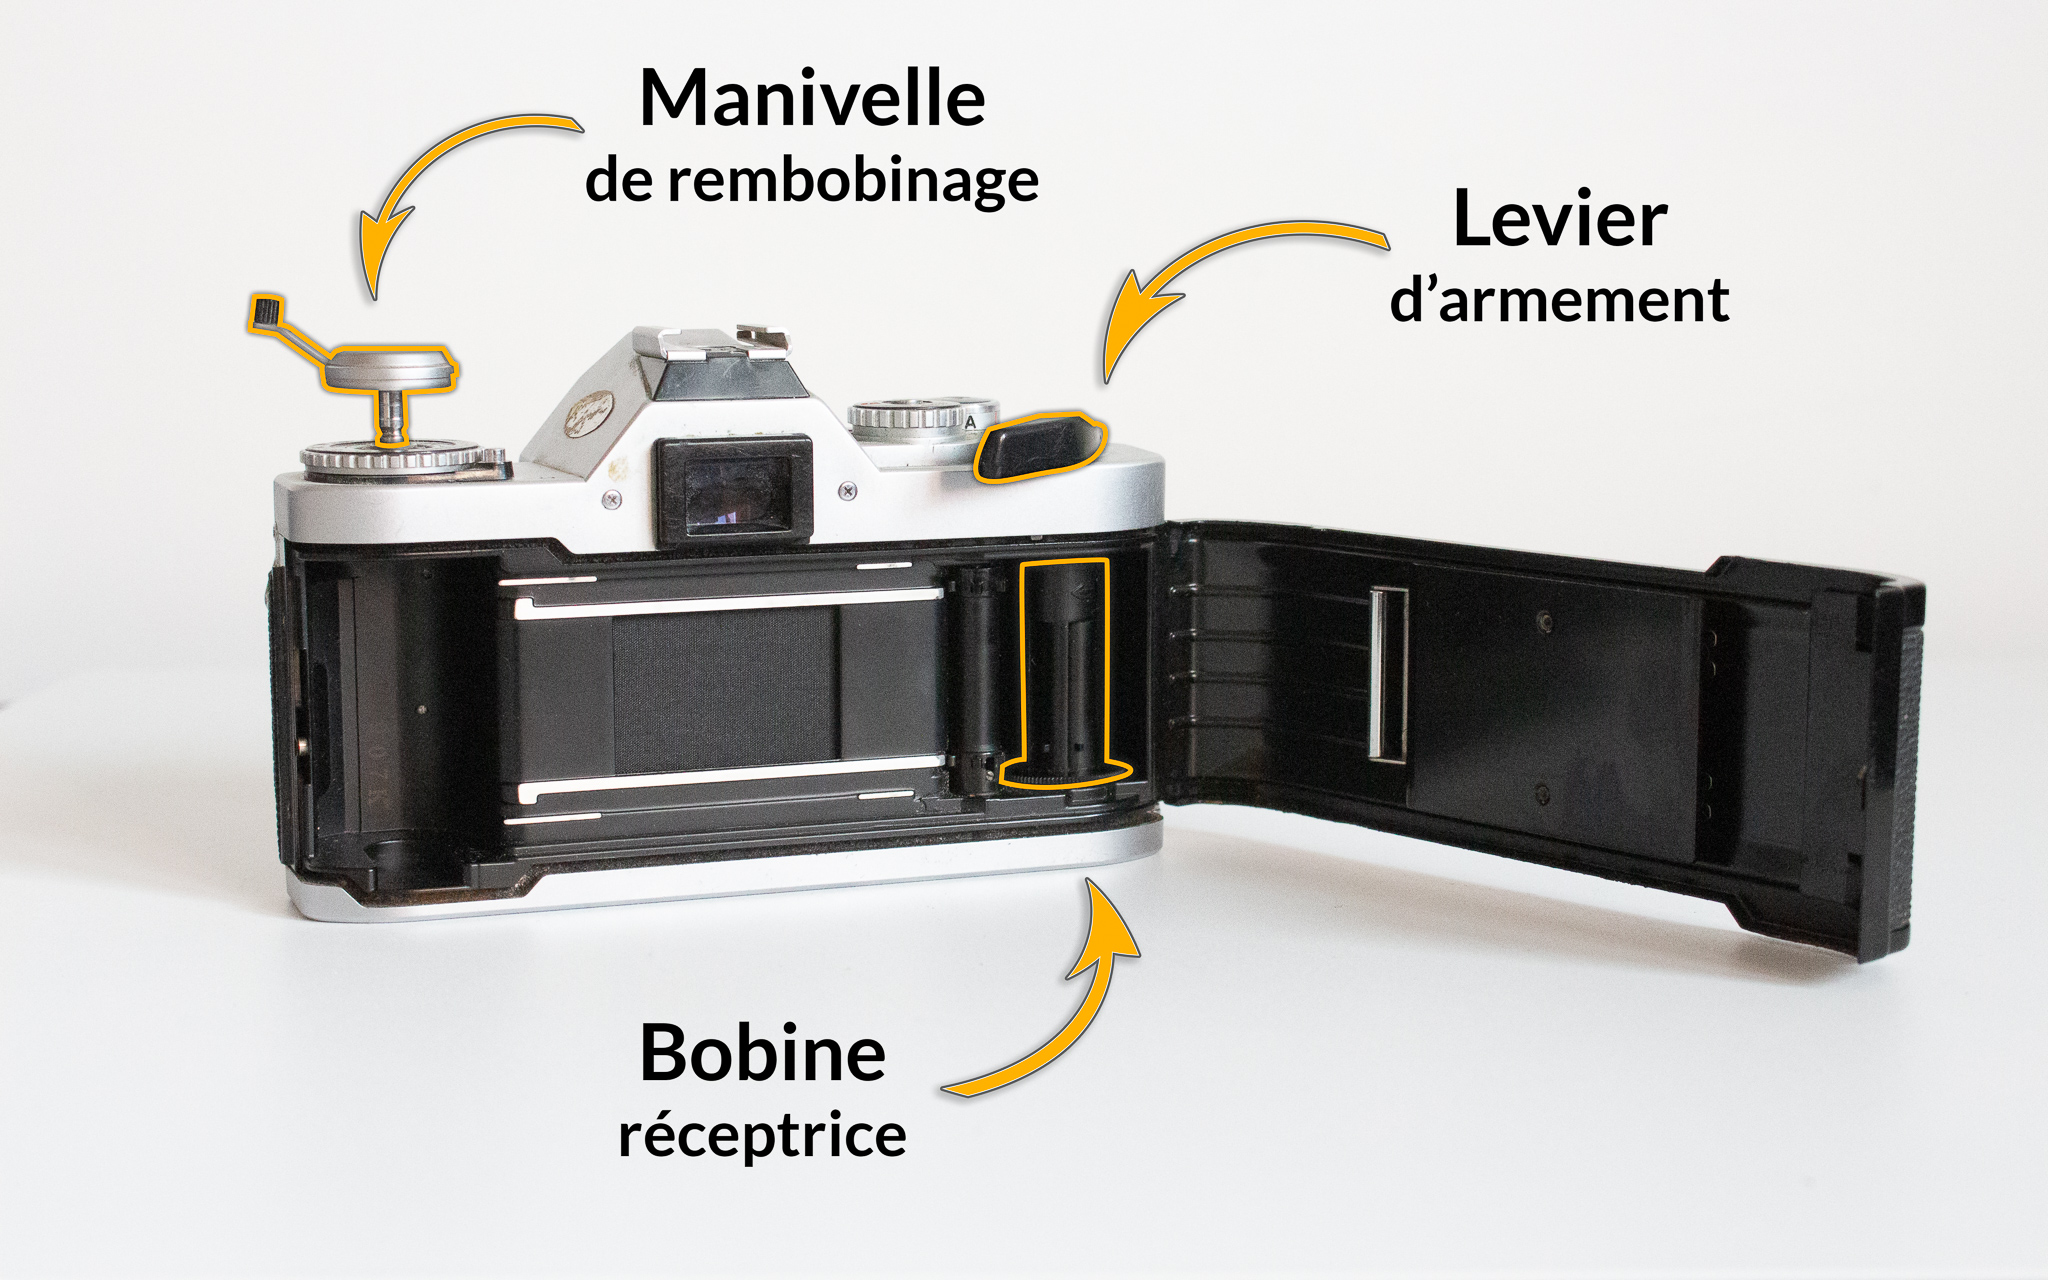 Photographie d'un Canon AV1 dont 3 éléments sont nommés et situés, la manivelle de rembobinage, le levier d'armement et la bobine réceptrice